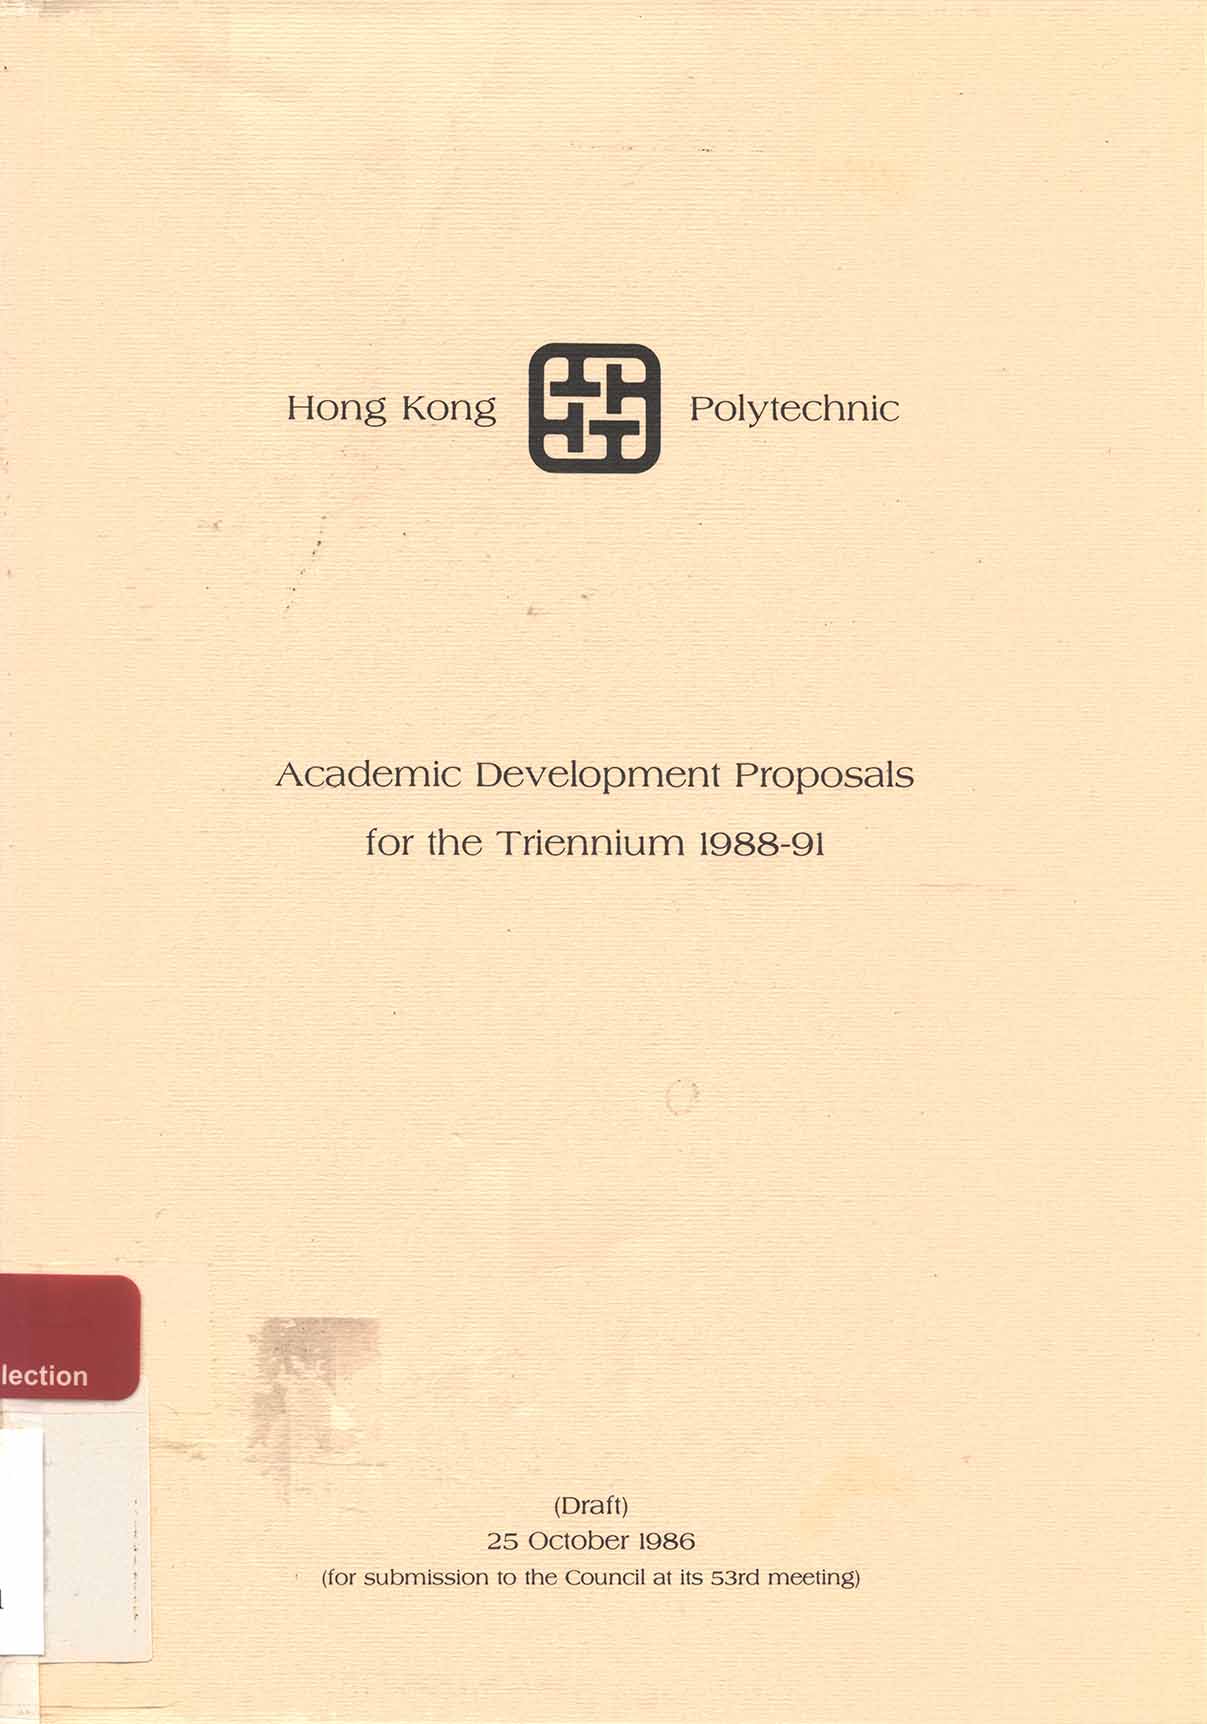 Academic development proposals for the Triennium 1988-91